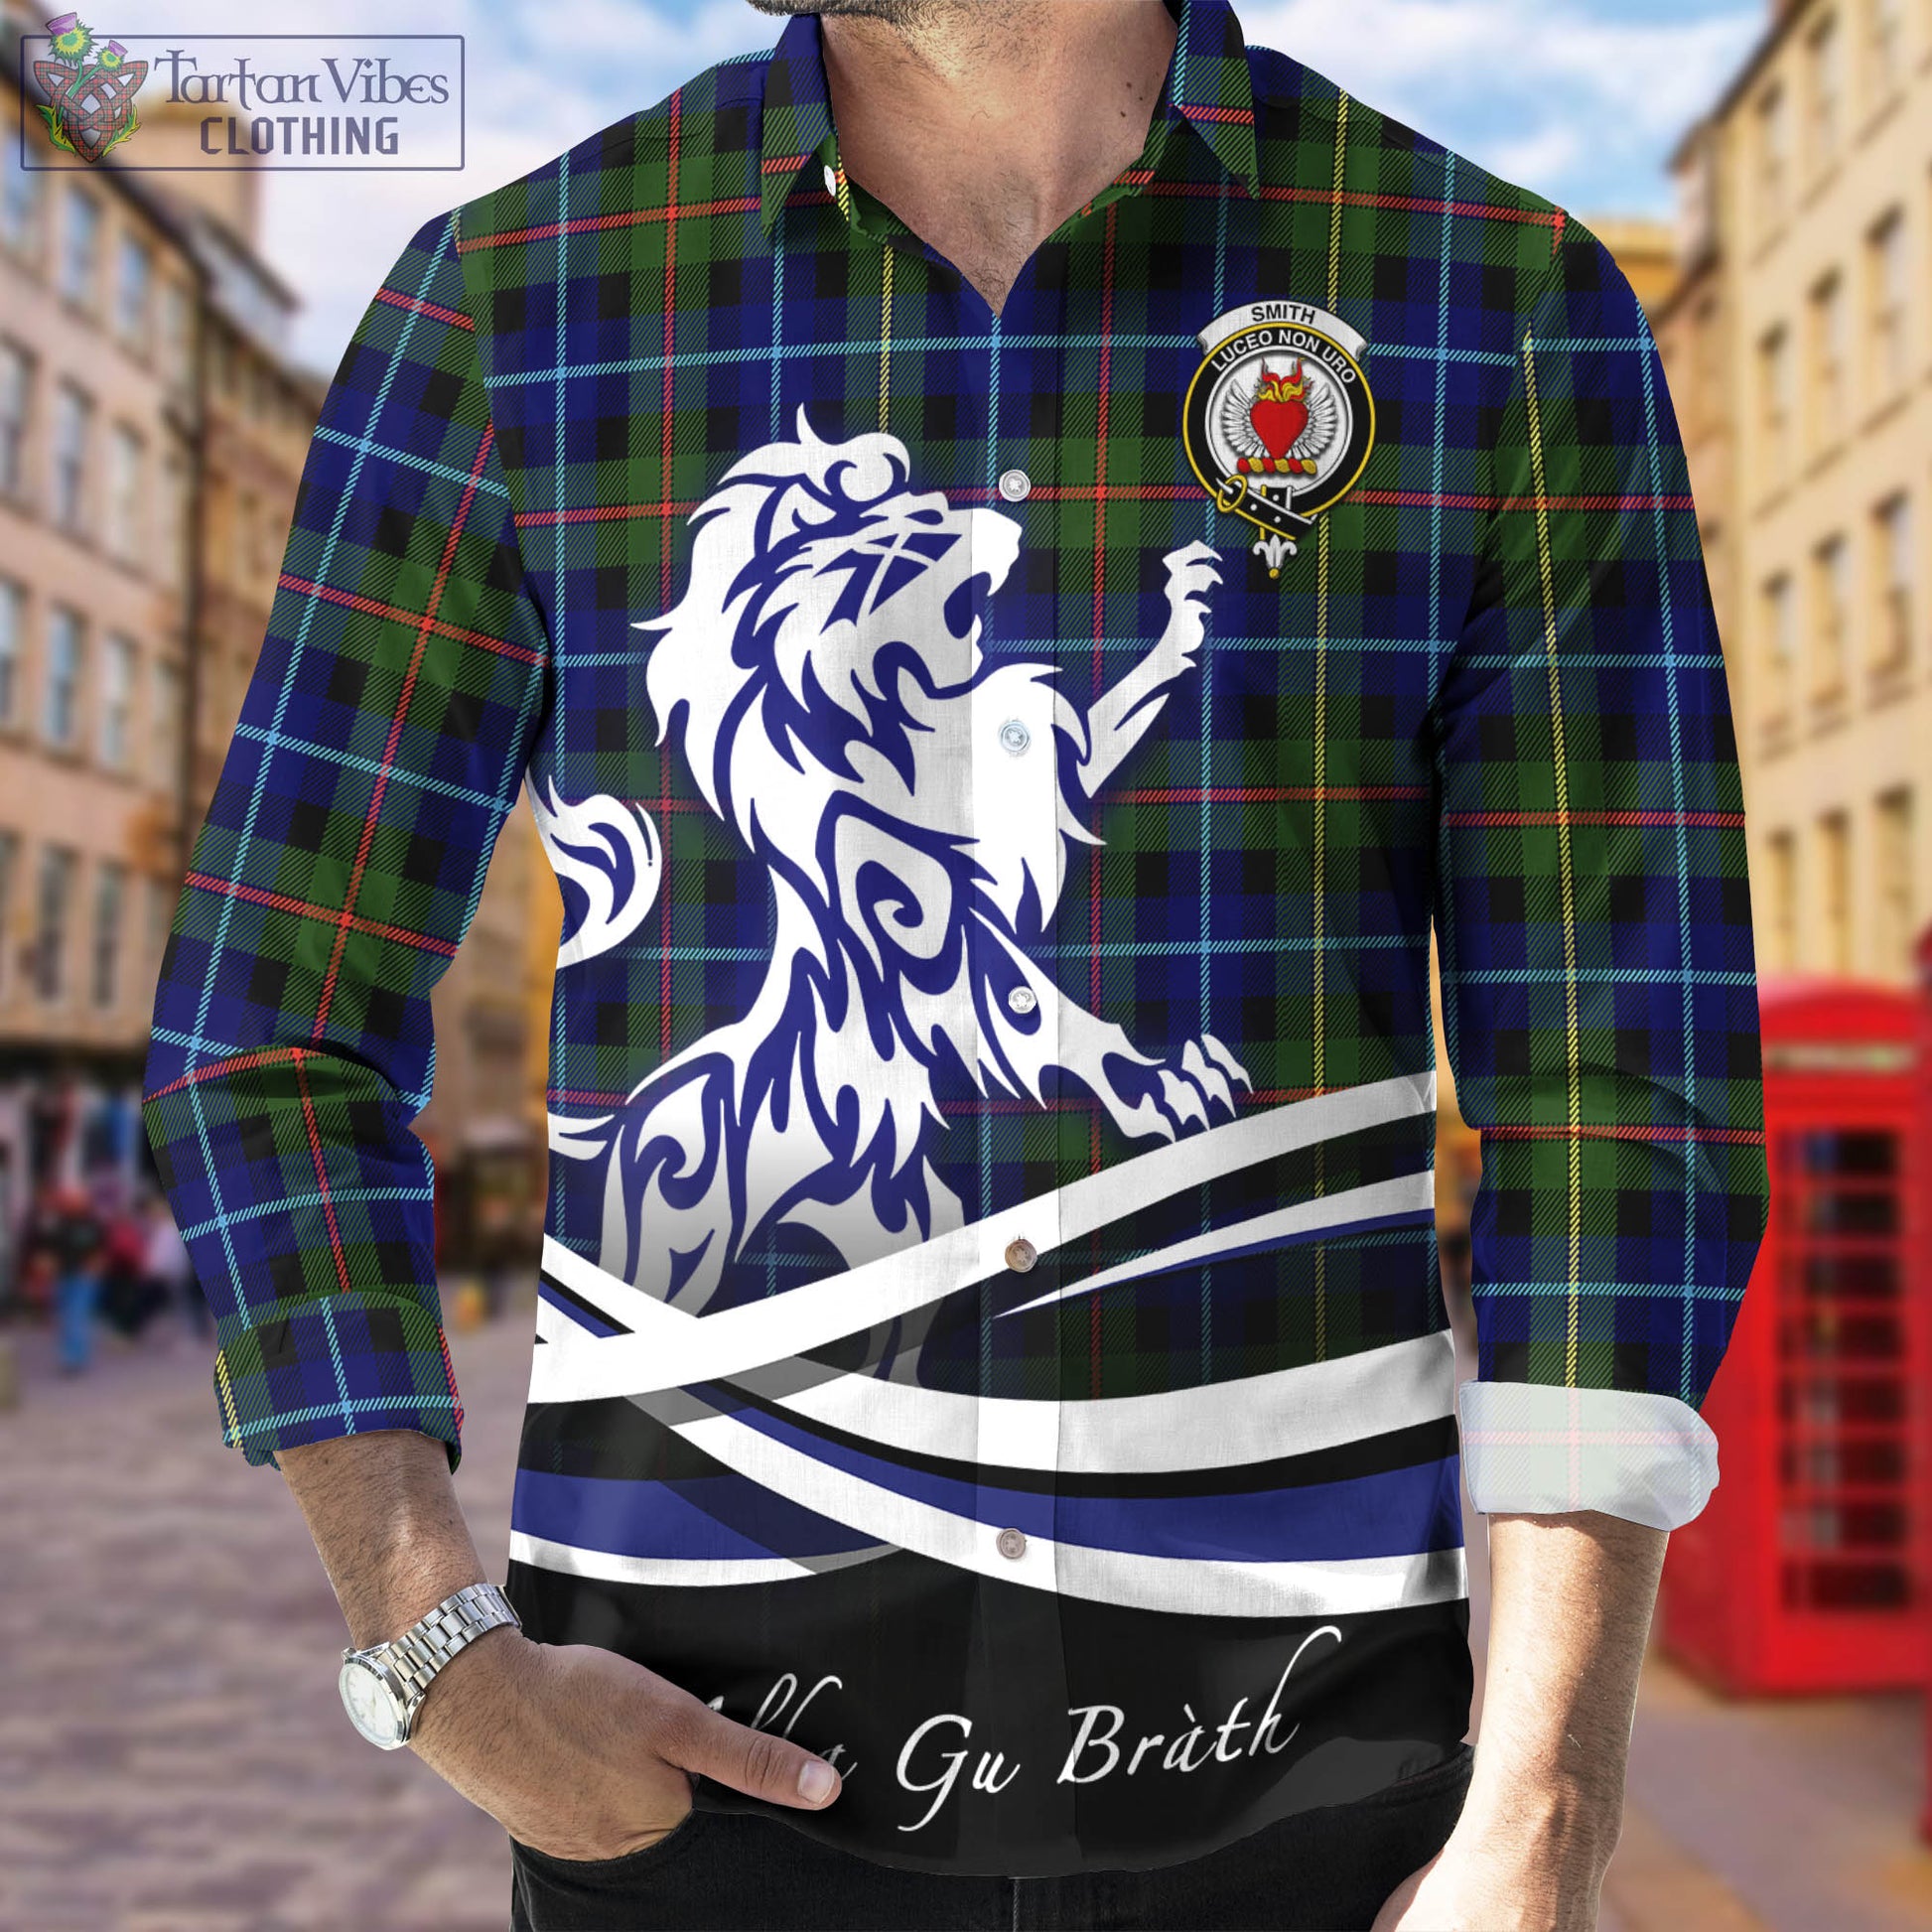 smith-modern-tartan-long-sleeve-button-up-shirt-with-alba-gu-brath-regal-lion-emblem